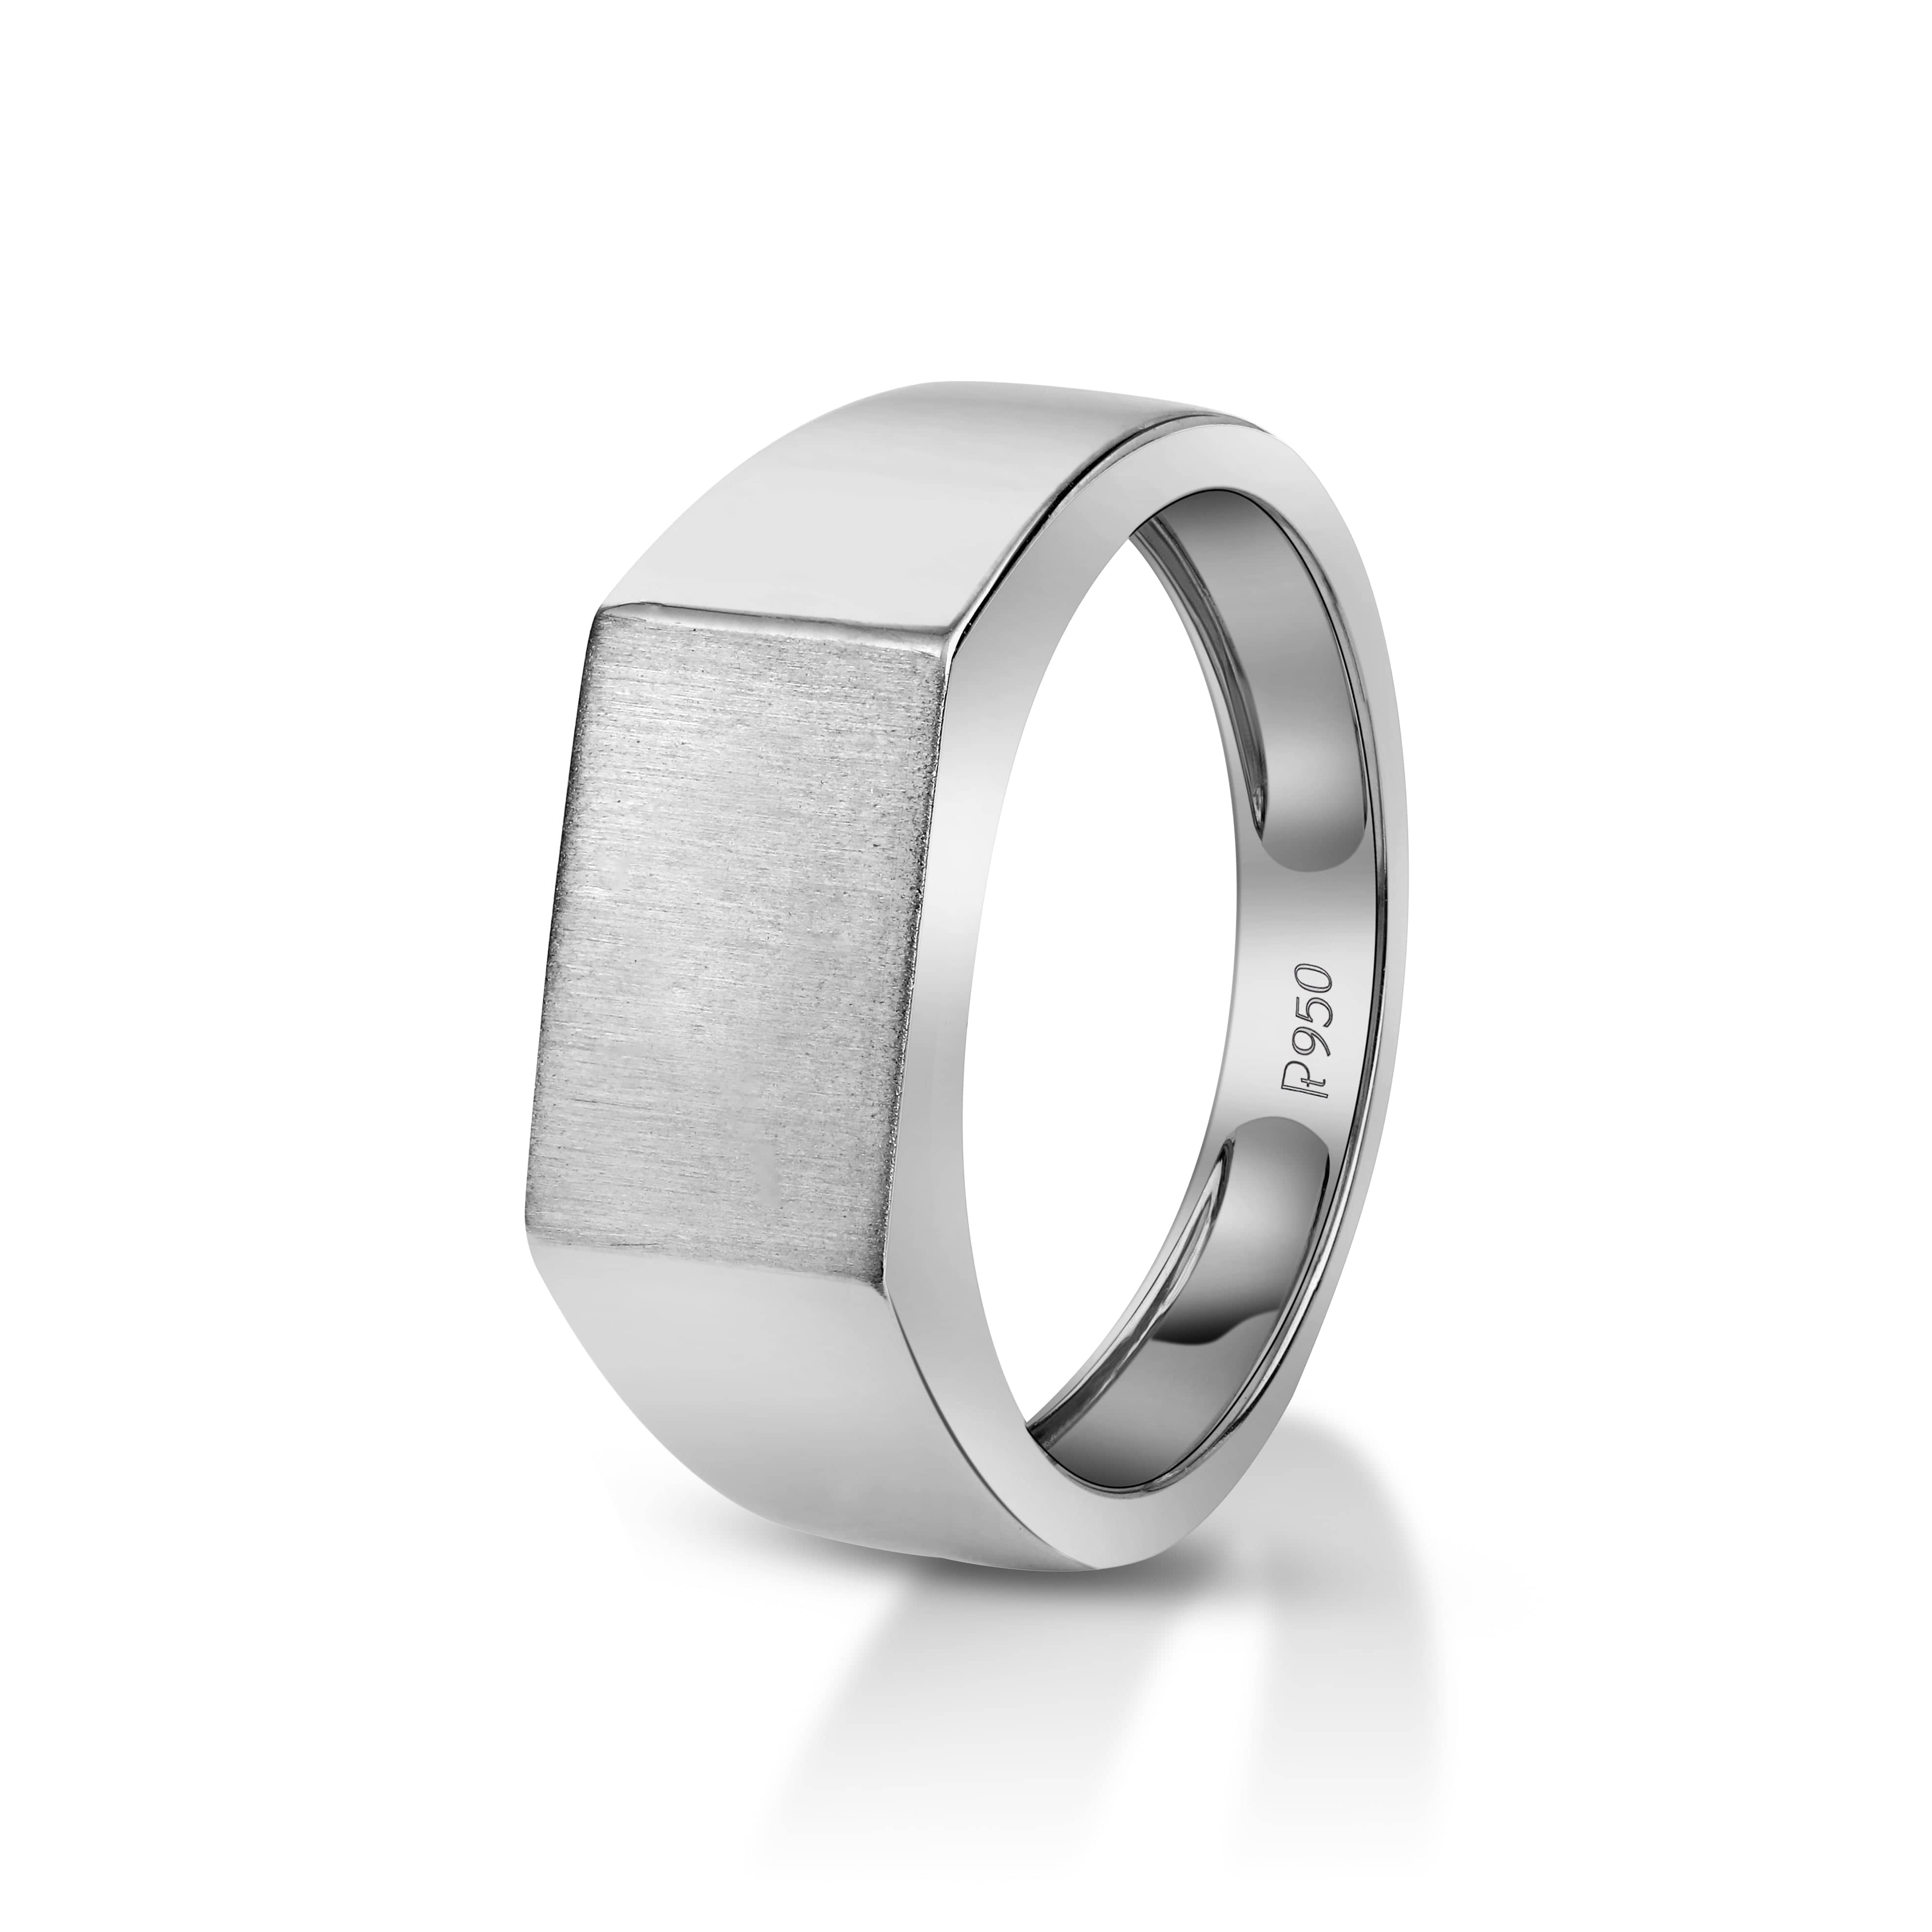 Details 163+ platinum rings for men latest - xkldase.edu.vn